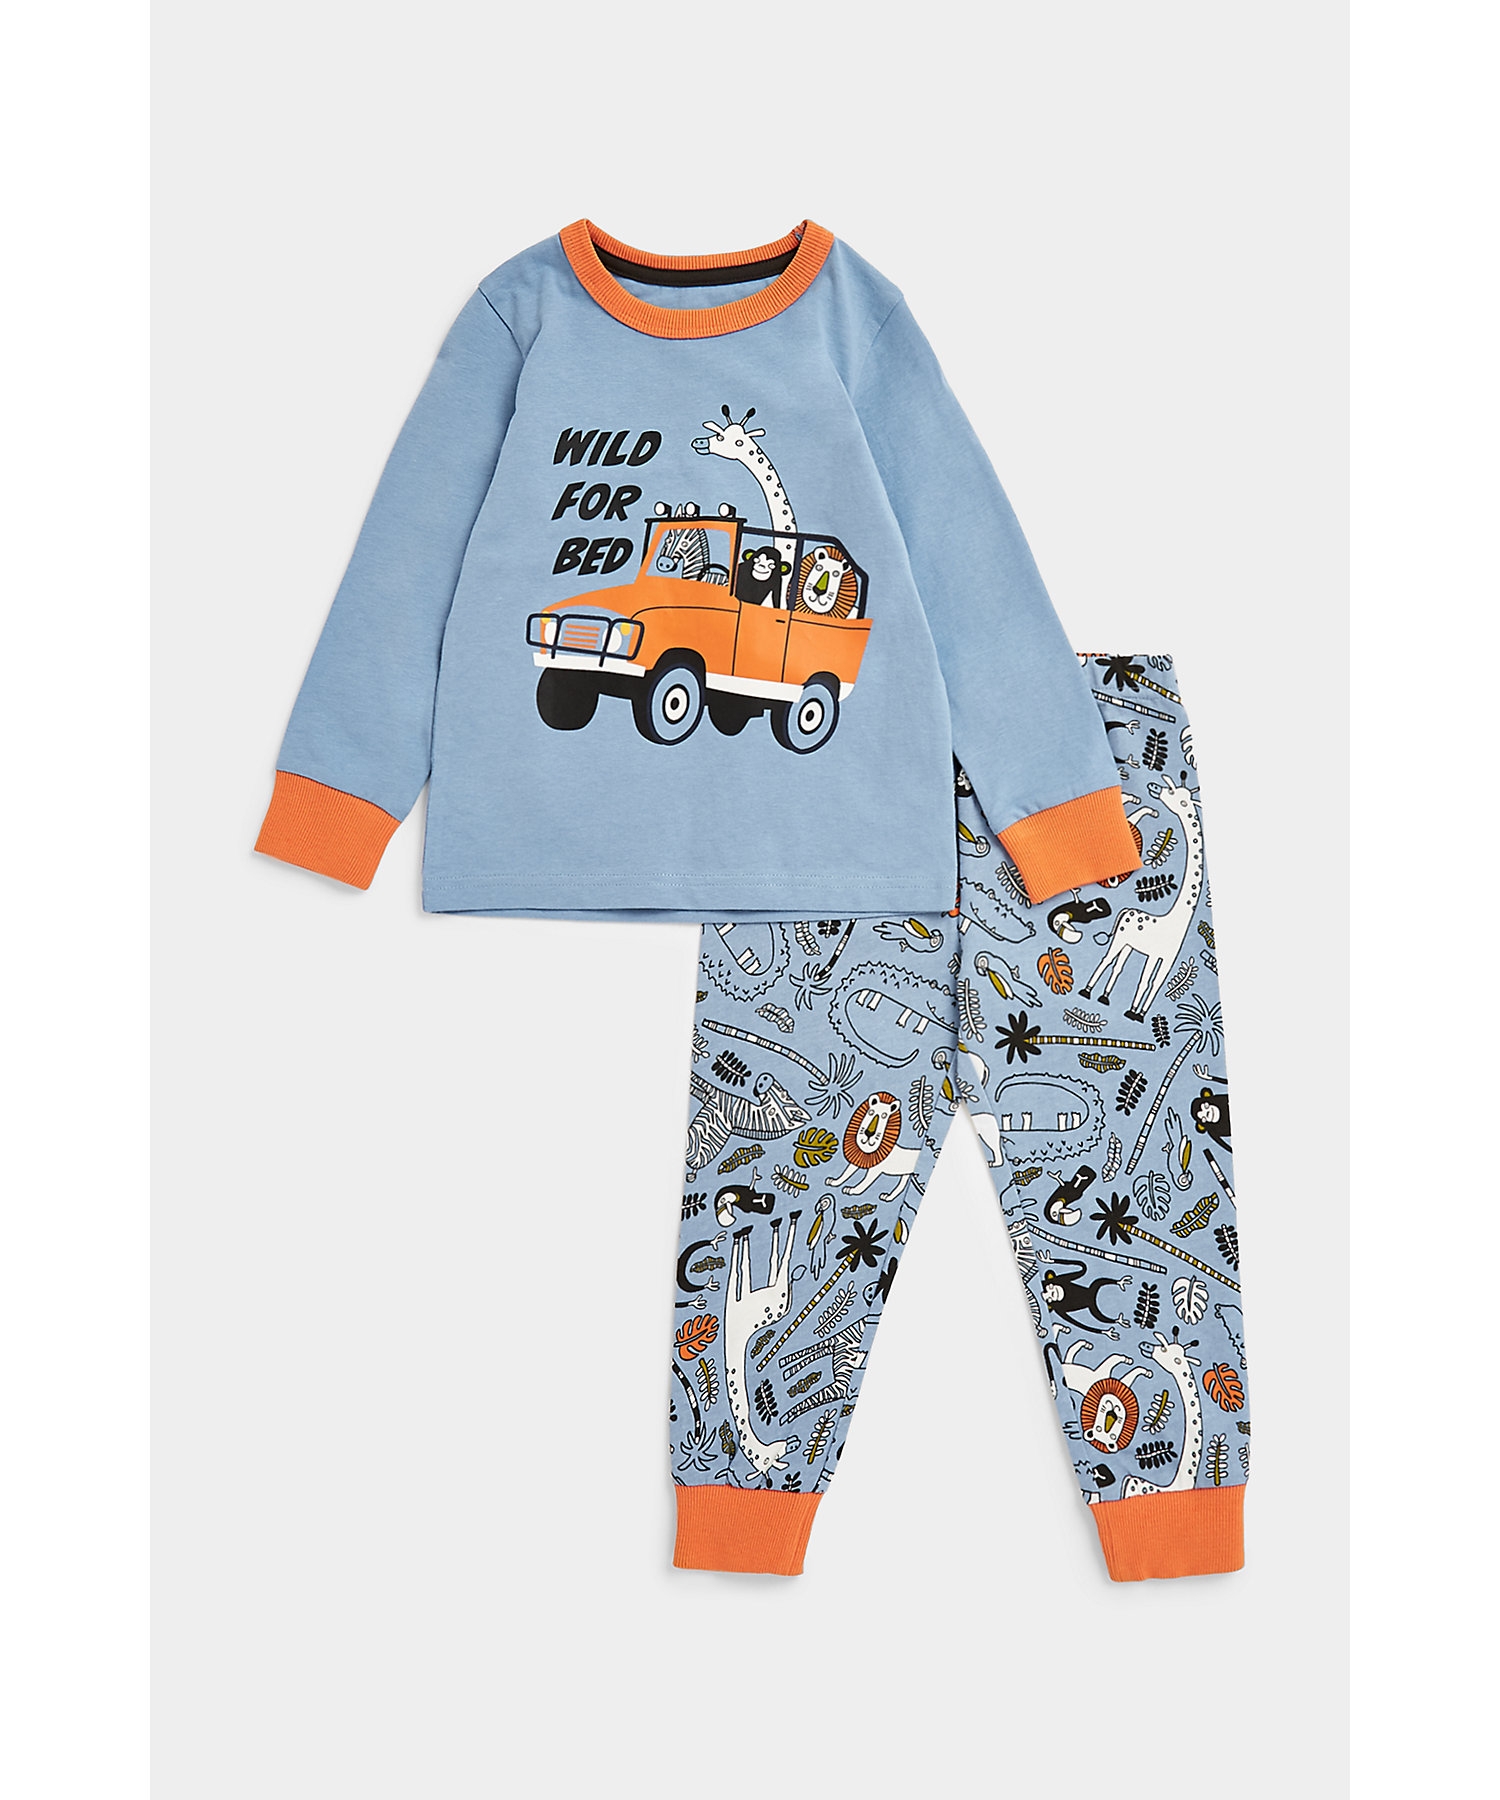 Boys Full Sleeves Pyjama Sets -Multicolor